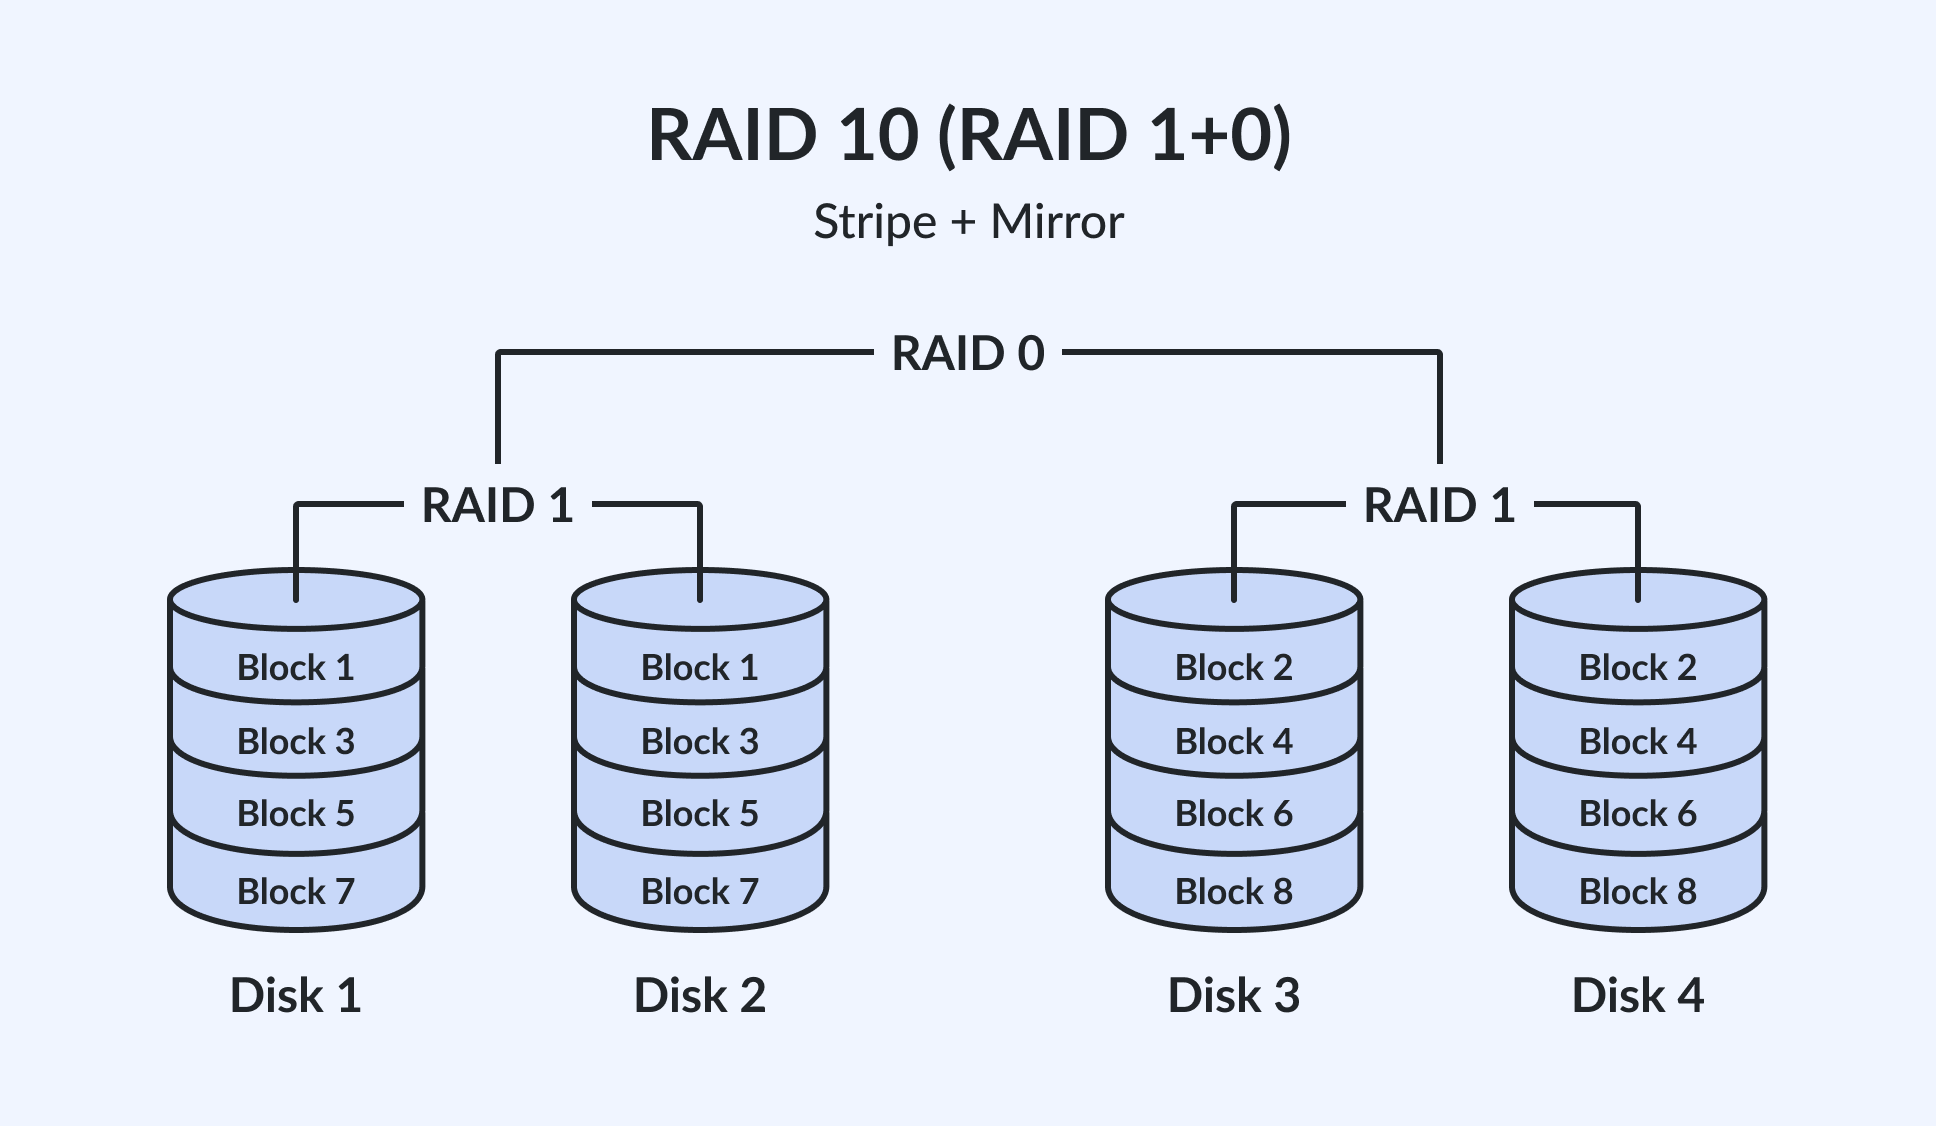 RAID 10 | RAID 1+0 | Sitripe + Mirror